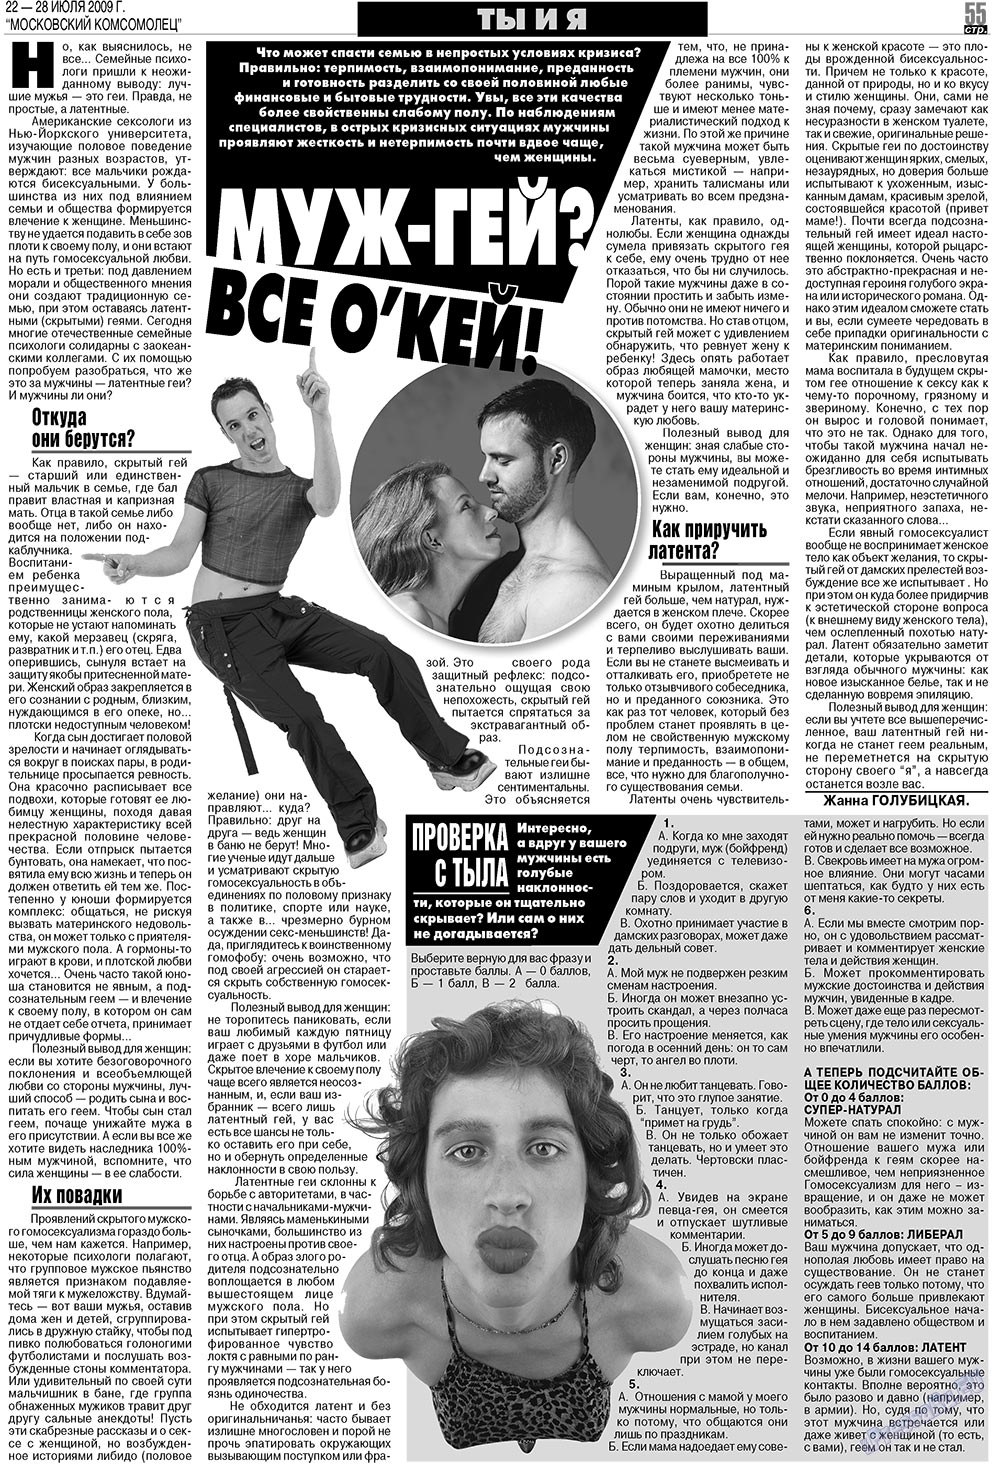 МК Испания, газета. 2009 №30 стр.55